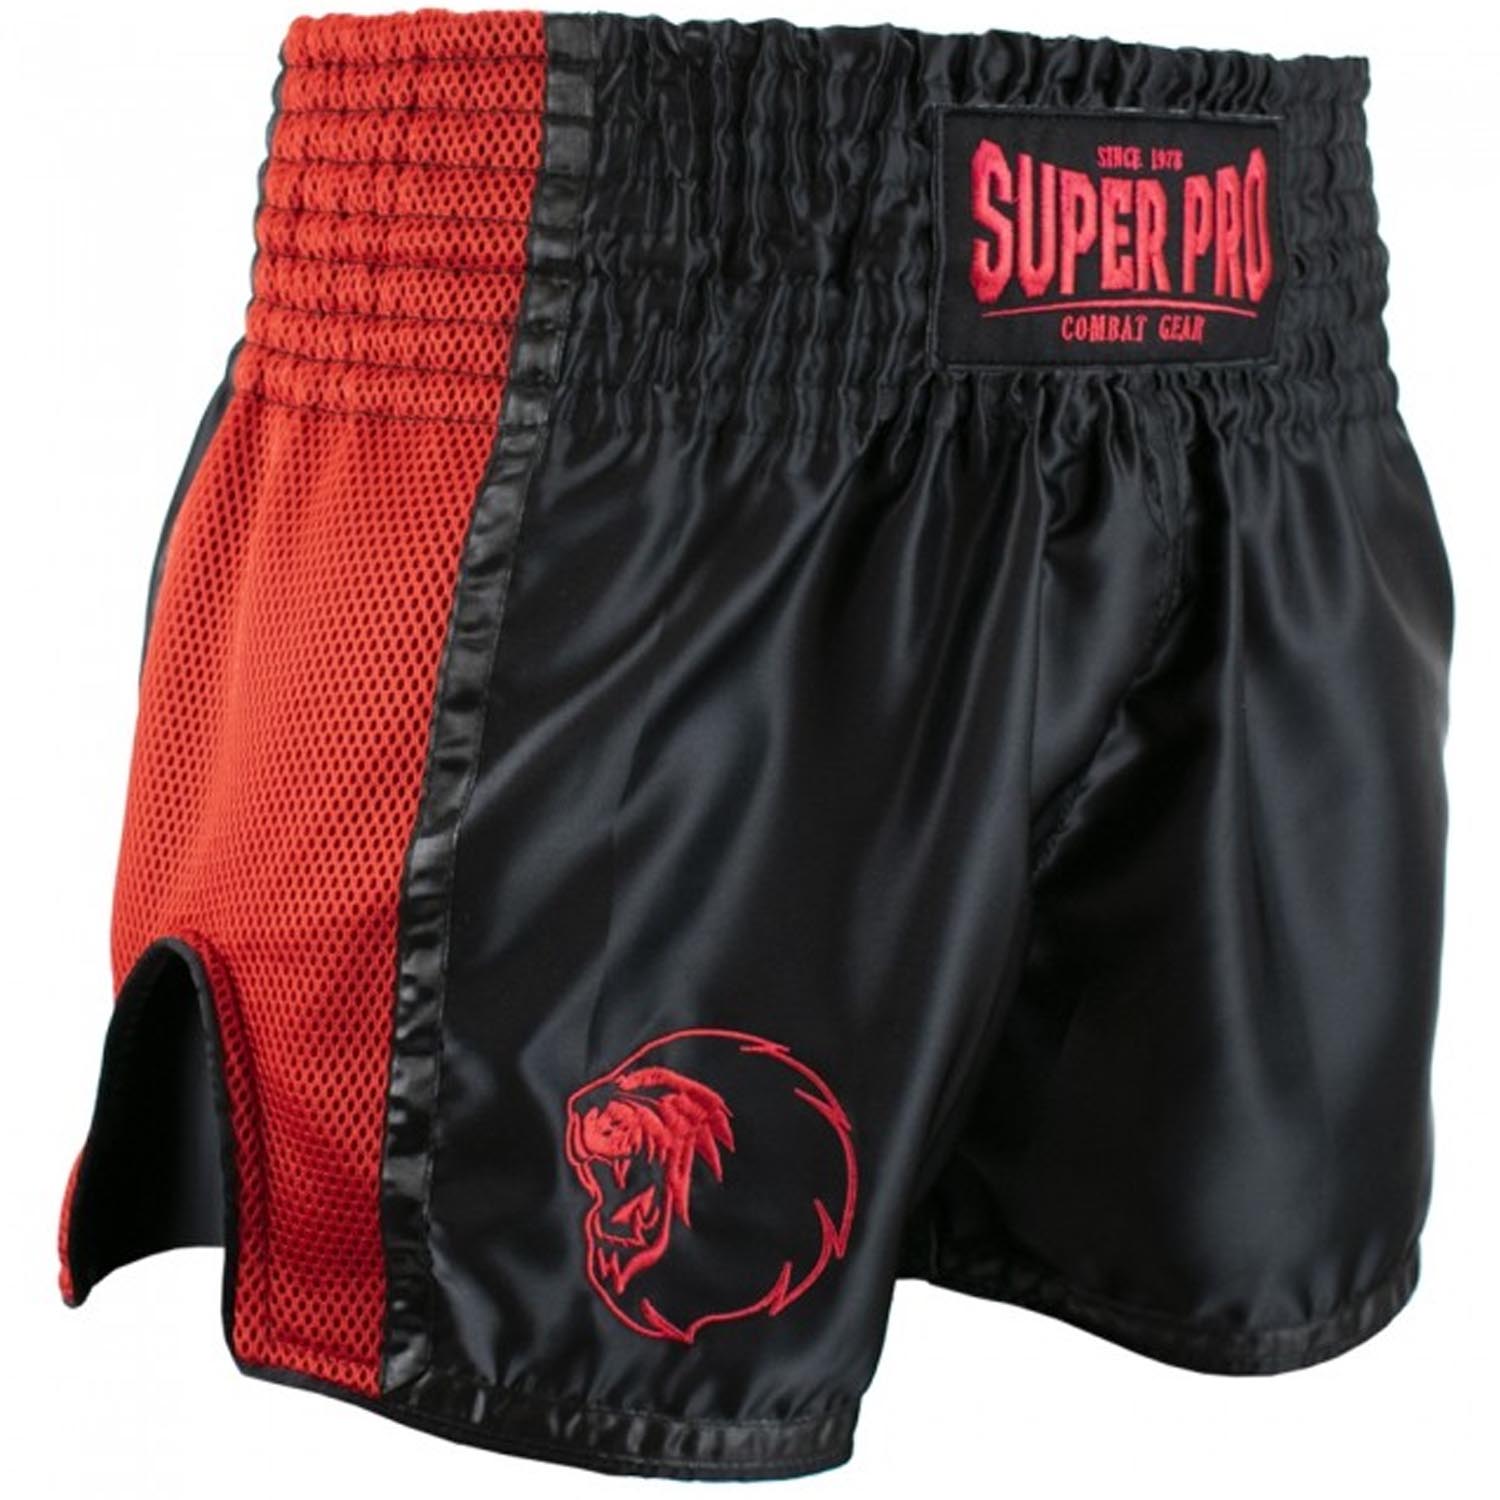 Super Pro Muay Thai Shorts, Brave, schwarz-rot